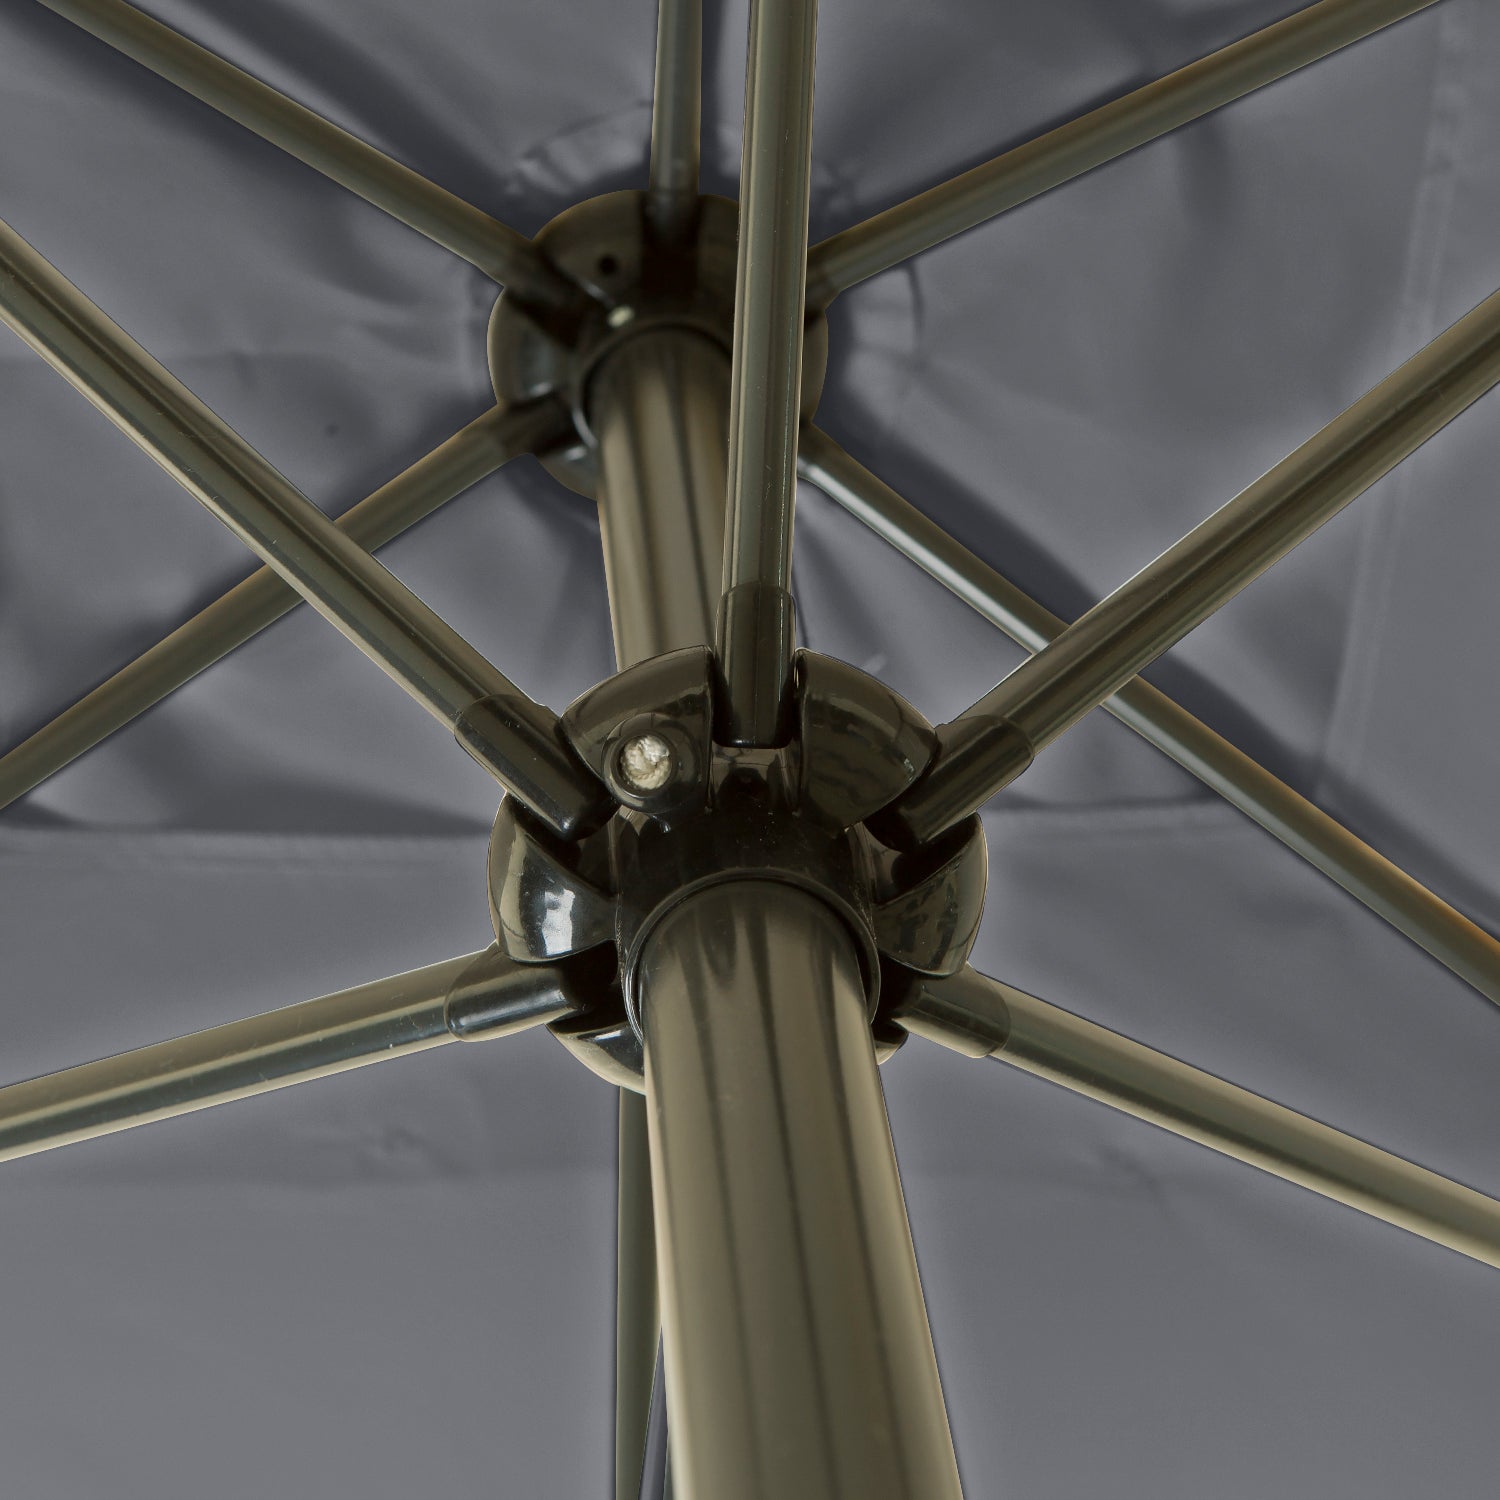 Kopu® rechthoekige parasol Bilbao 150x250 cm met voet - Grey